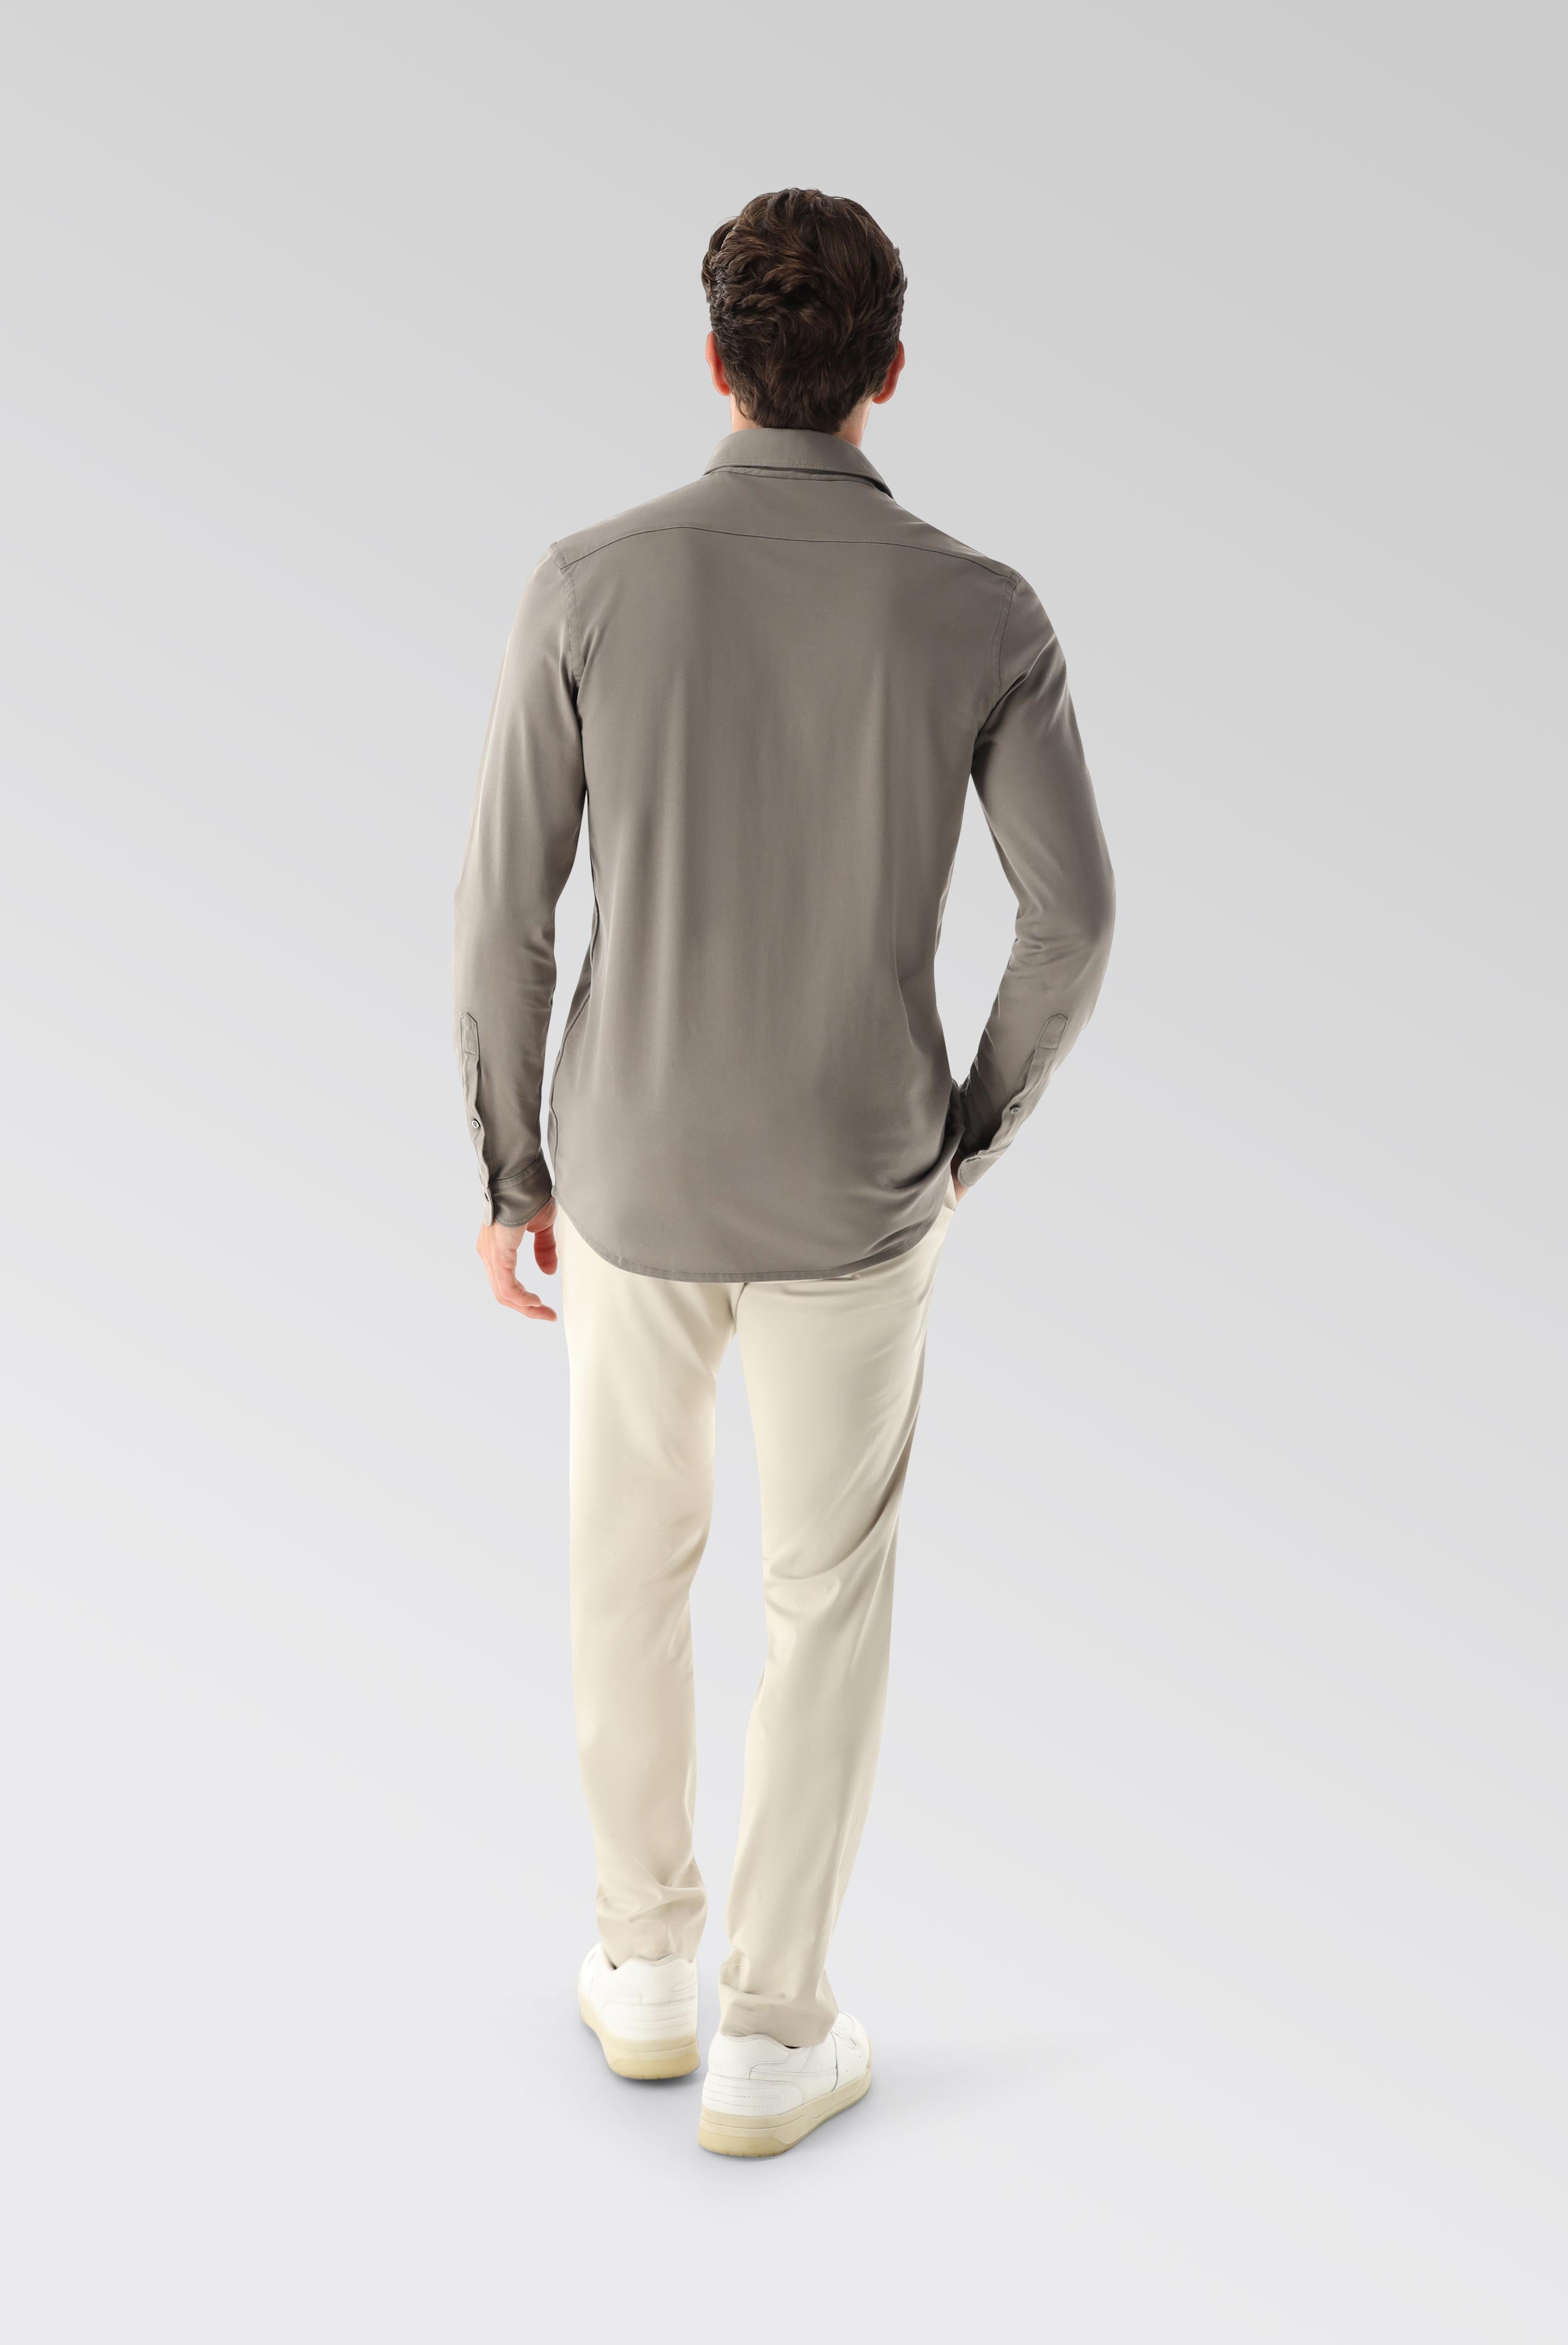 Jersey Hemden+Jersey Shirt Urban Look Slim Fit+20.1651.UC.Z20044.060.S